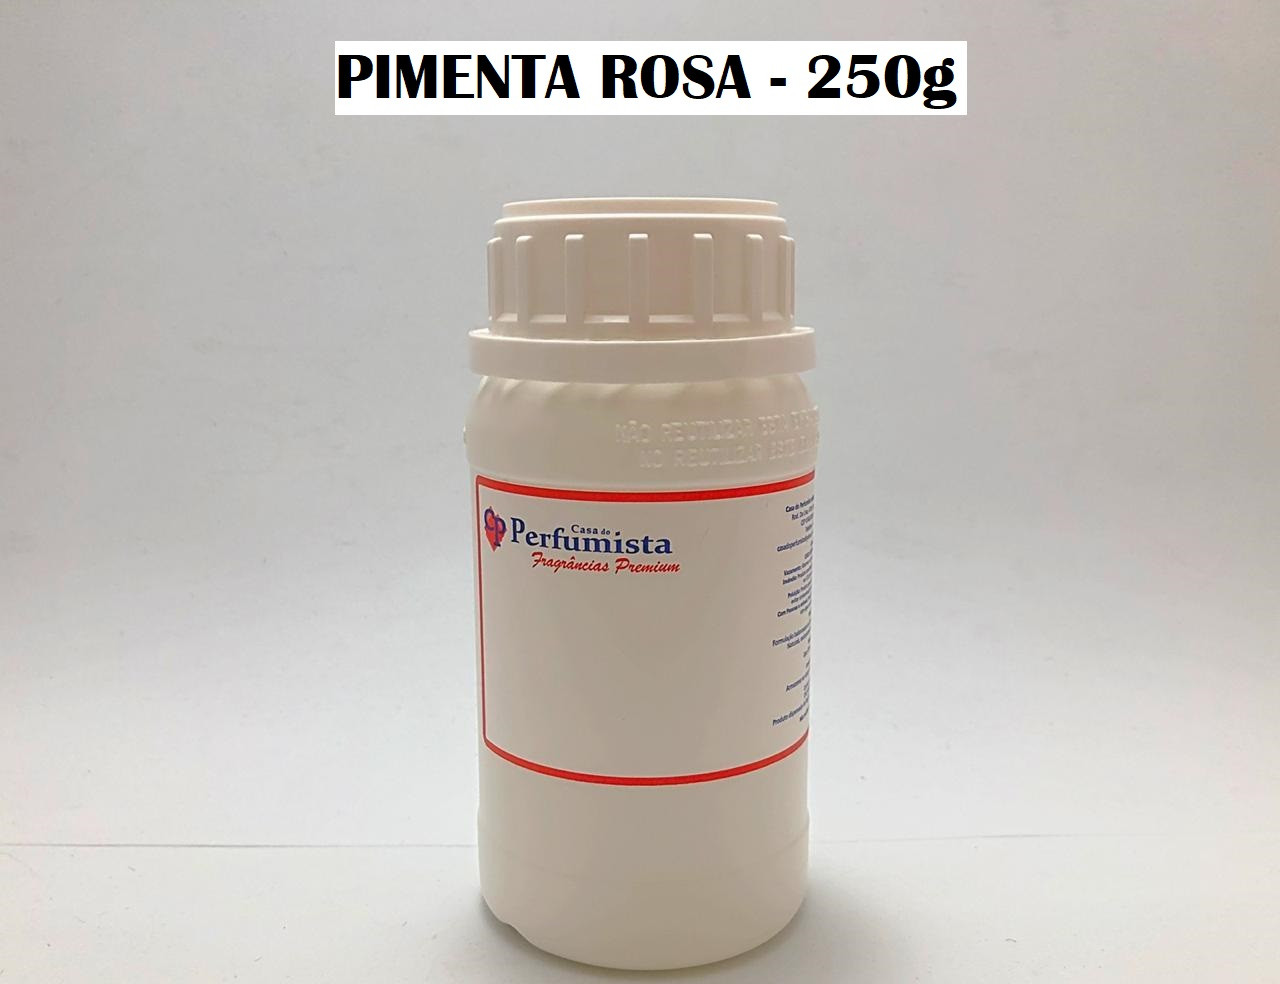 PIMENTA ROSA - 250g